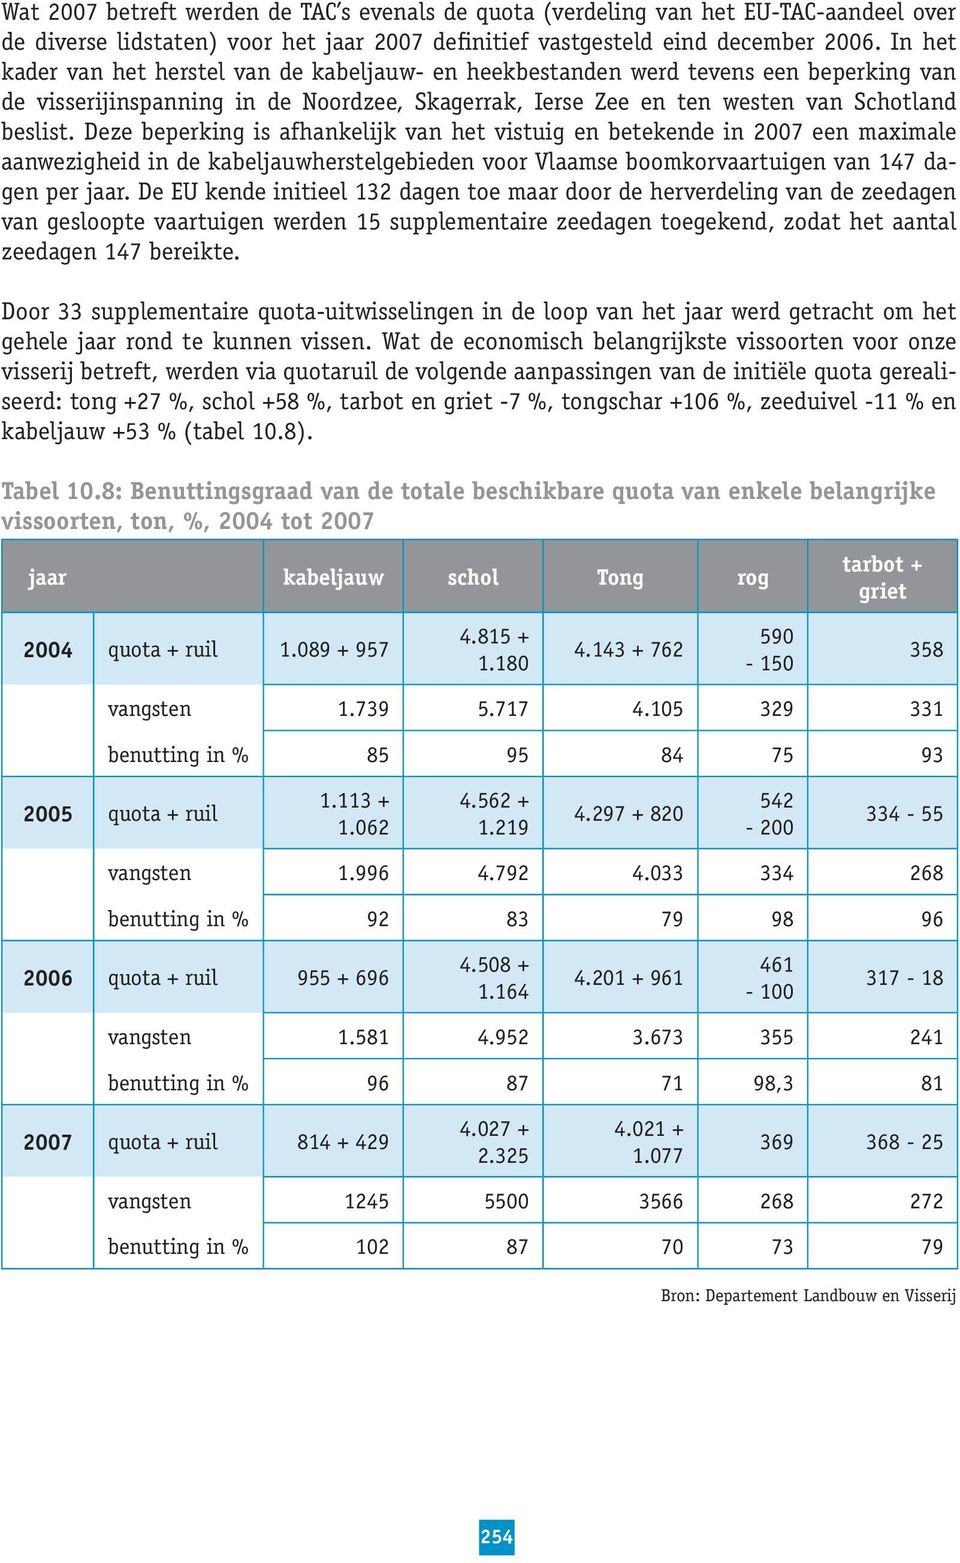 Deze beperking is afhankelijk van het vistuig en betekende in 2007 een maximale aanwezigheid in de kabeljauwherstelgebieden voor Vlaamse boomkorvaartuigen van 147 dagen per jaar.